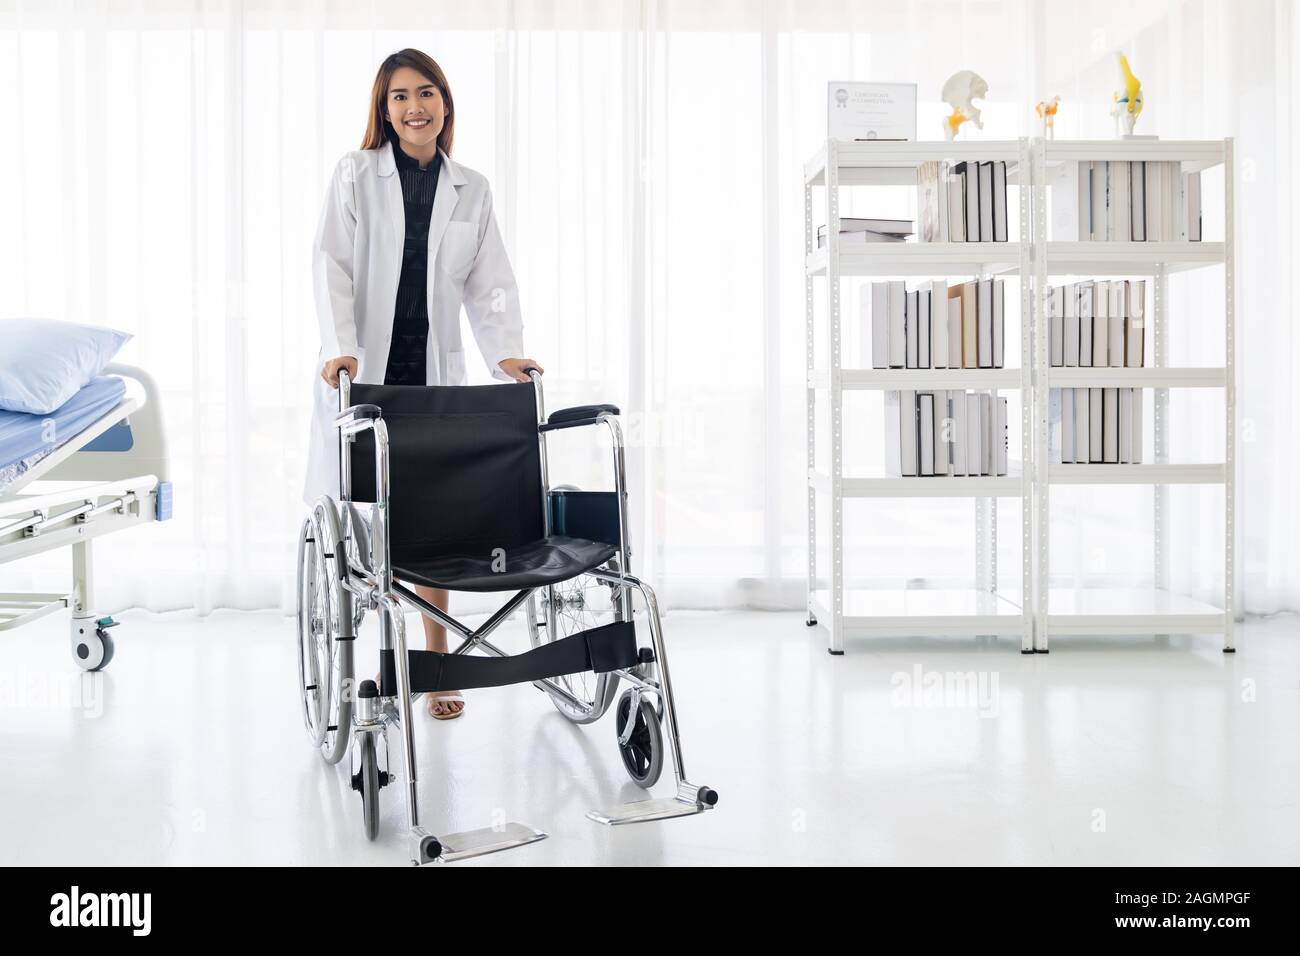 Portrait of female doctor holding medical fauteuil roulant professionnel dans la salle d'examen clinique de l'hôpital Banque D'Images